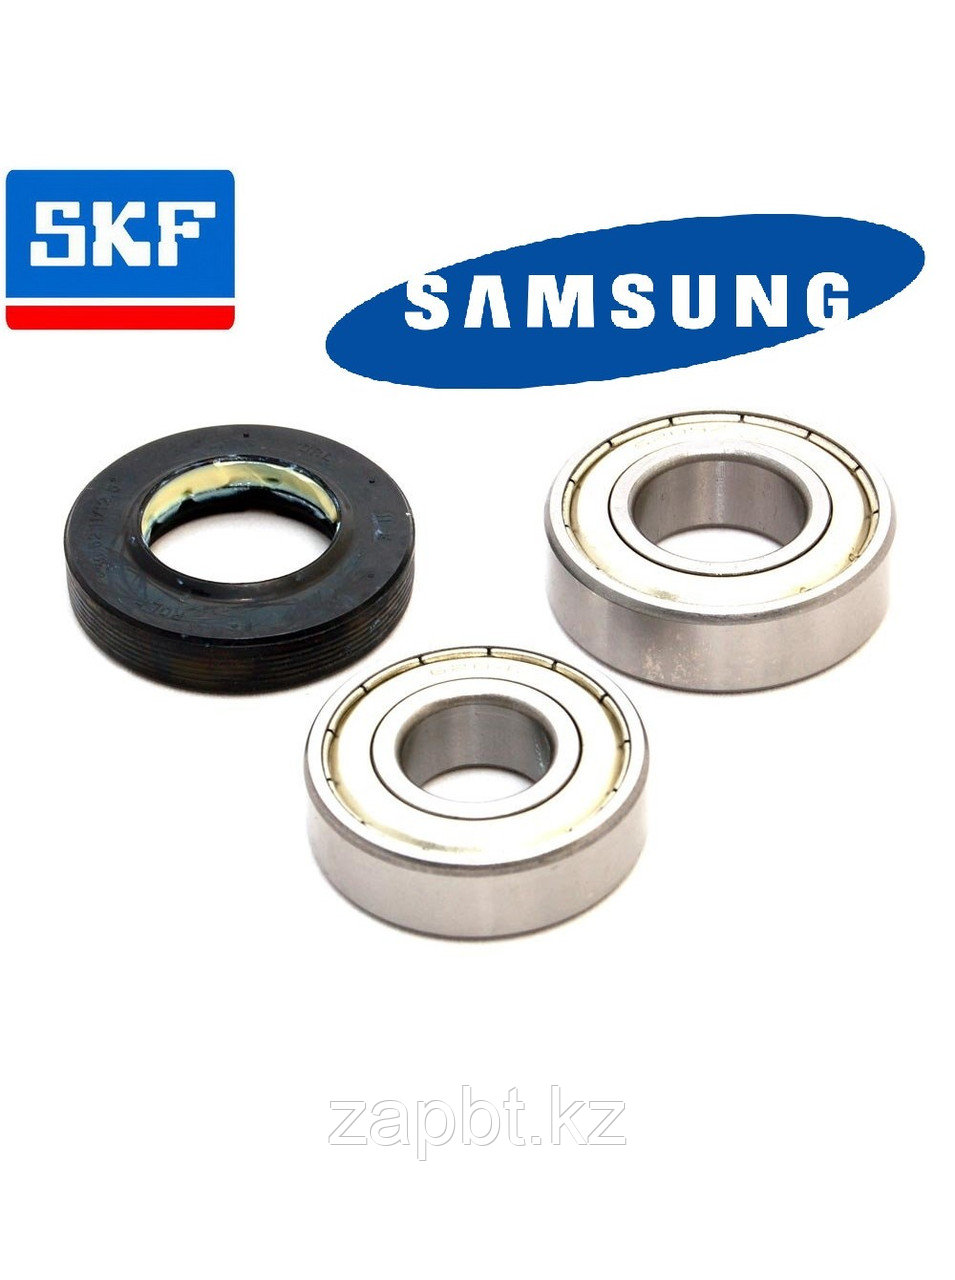 Ремкомплект подшипников SKF и сальник  для стиральных машин Samsung 30x60.55x10/12  6204 - 6205